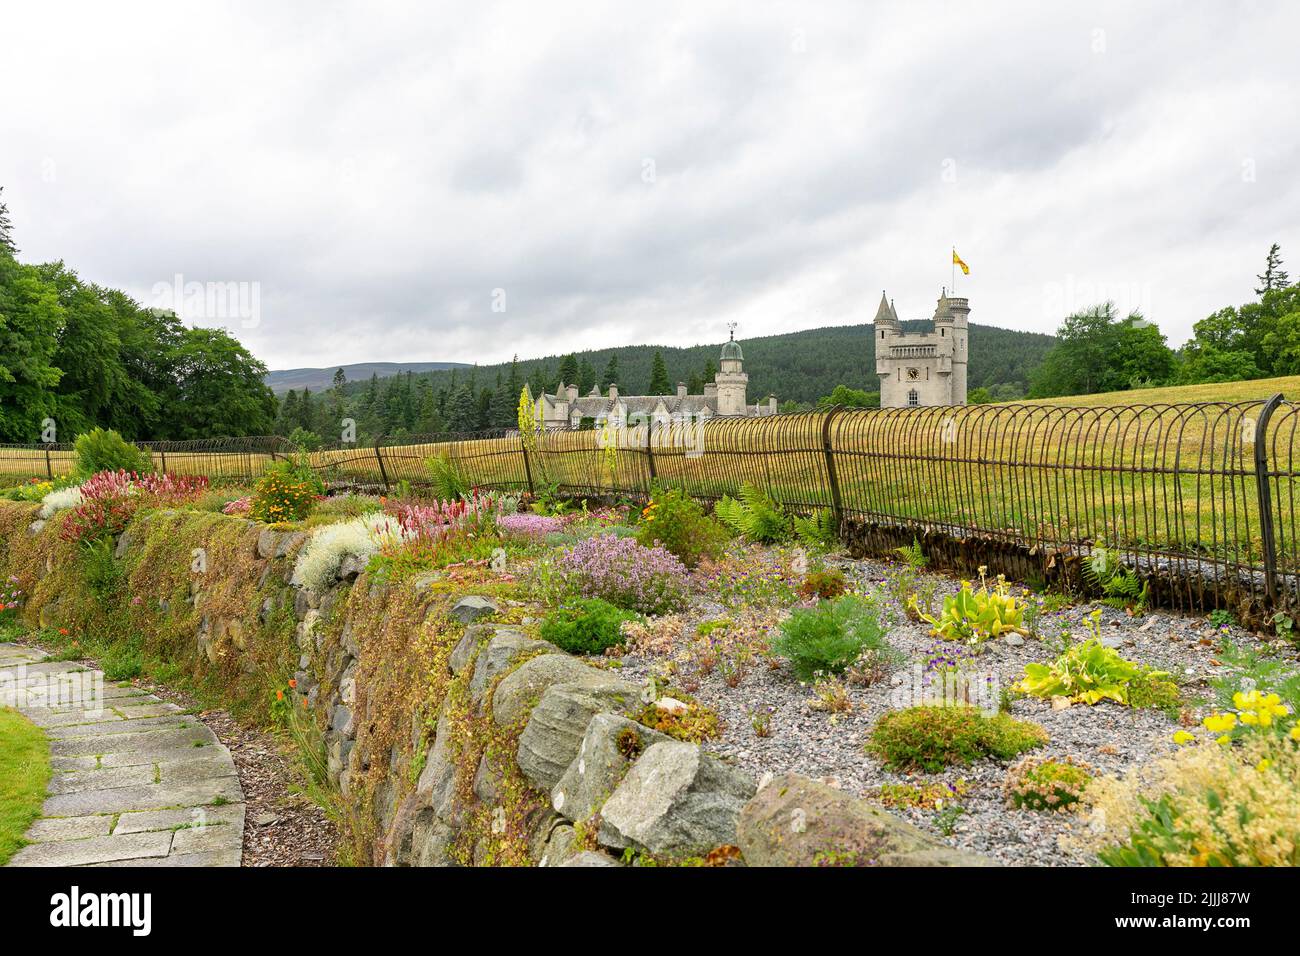 Balmoral Castle, residencia privada de la familia real en Aberdeenshire, vista desde los jardines de la finca con flores en flor, día de verano, Escocia, Reino Unido Foto de stock